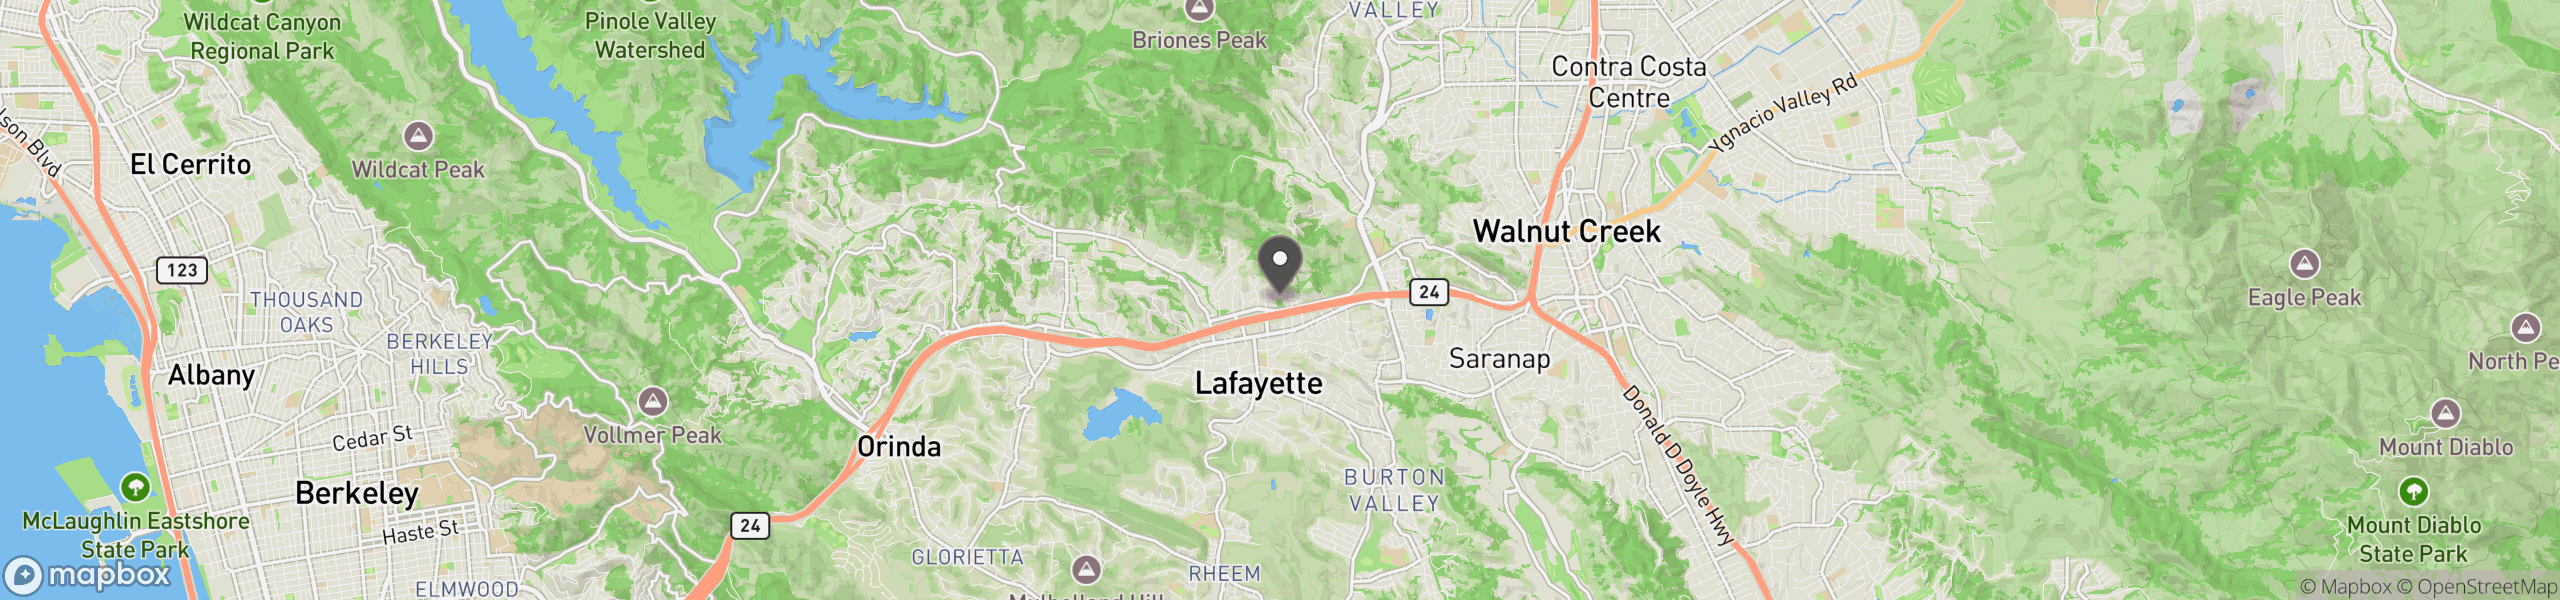 Lafayette, CA 94549